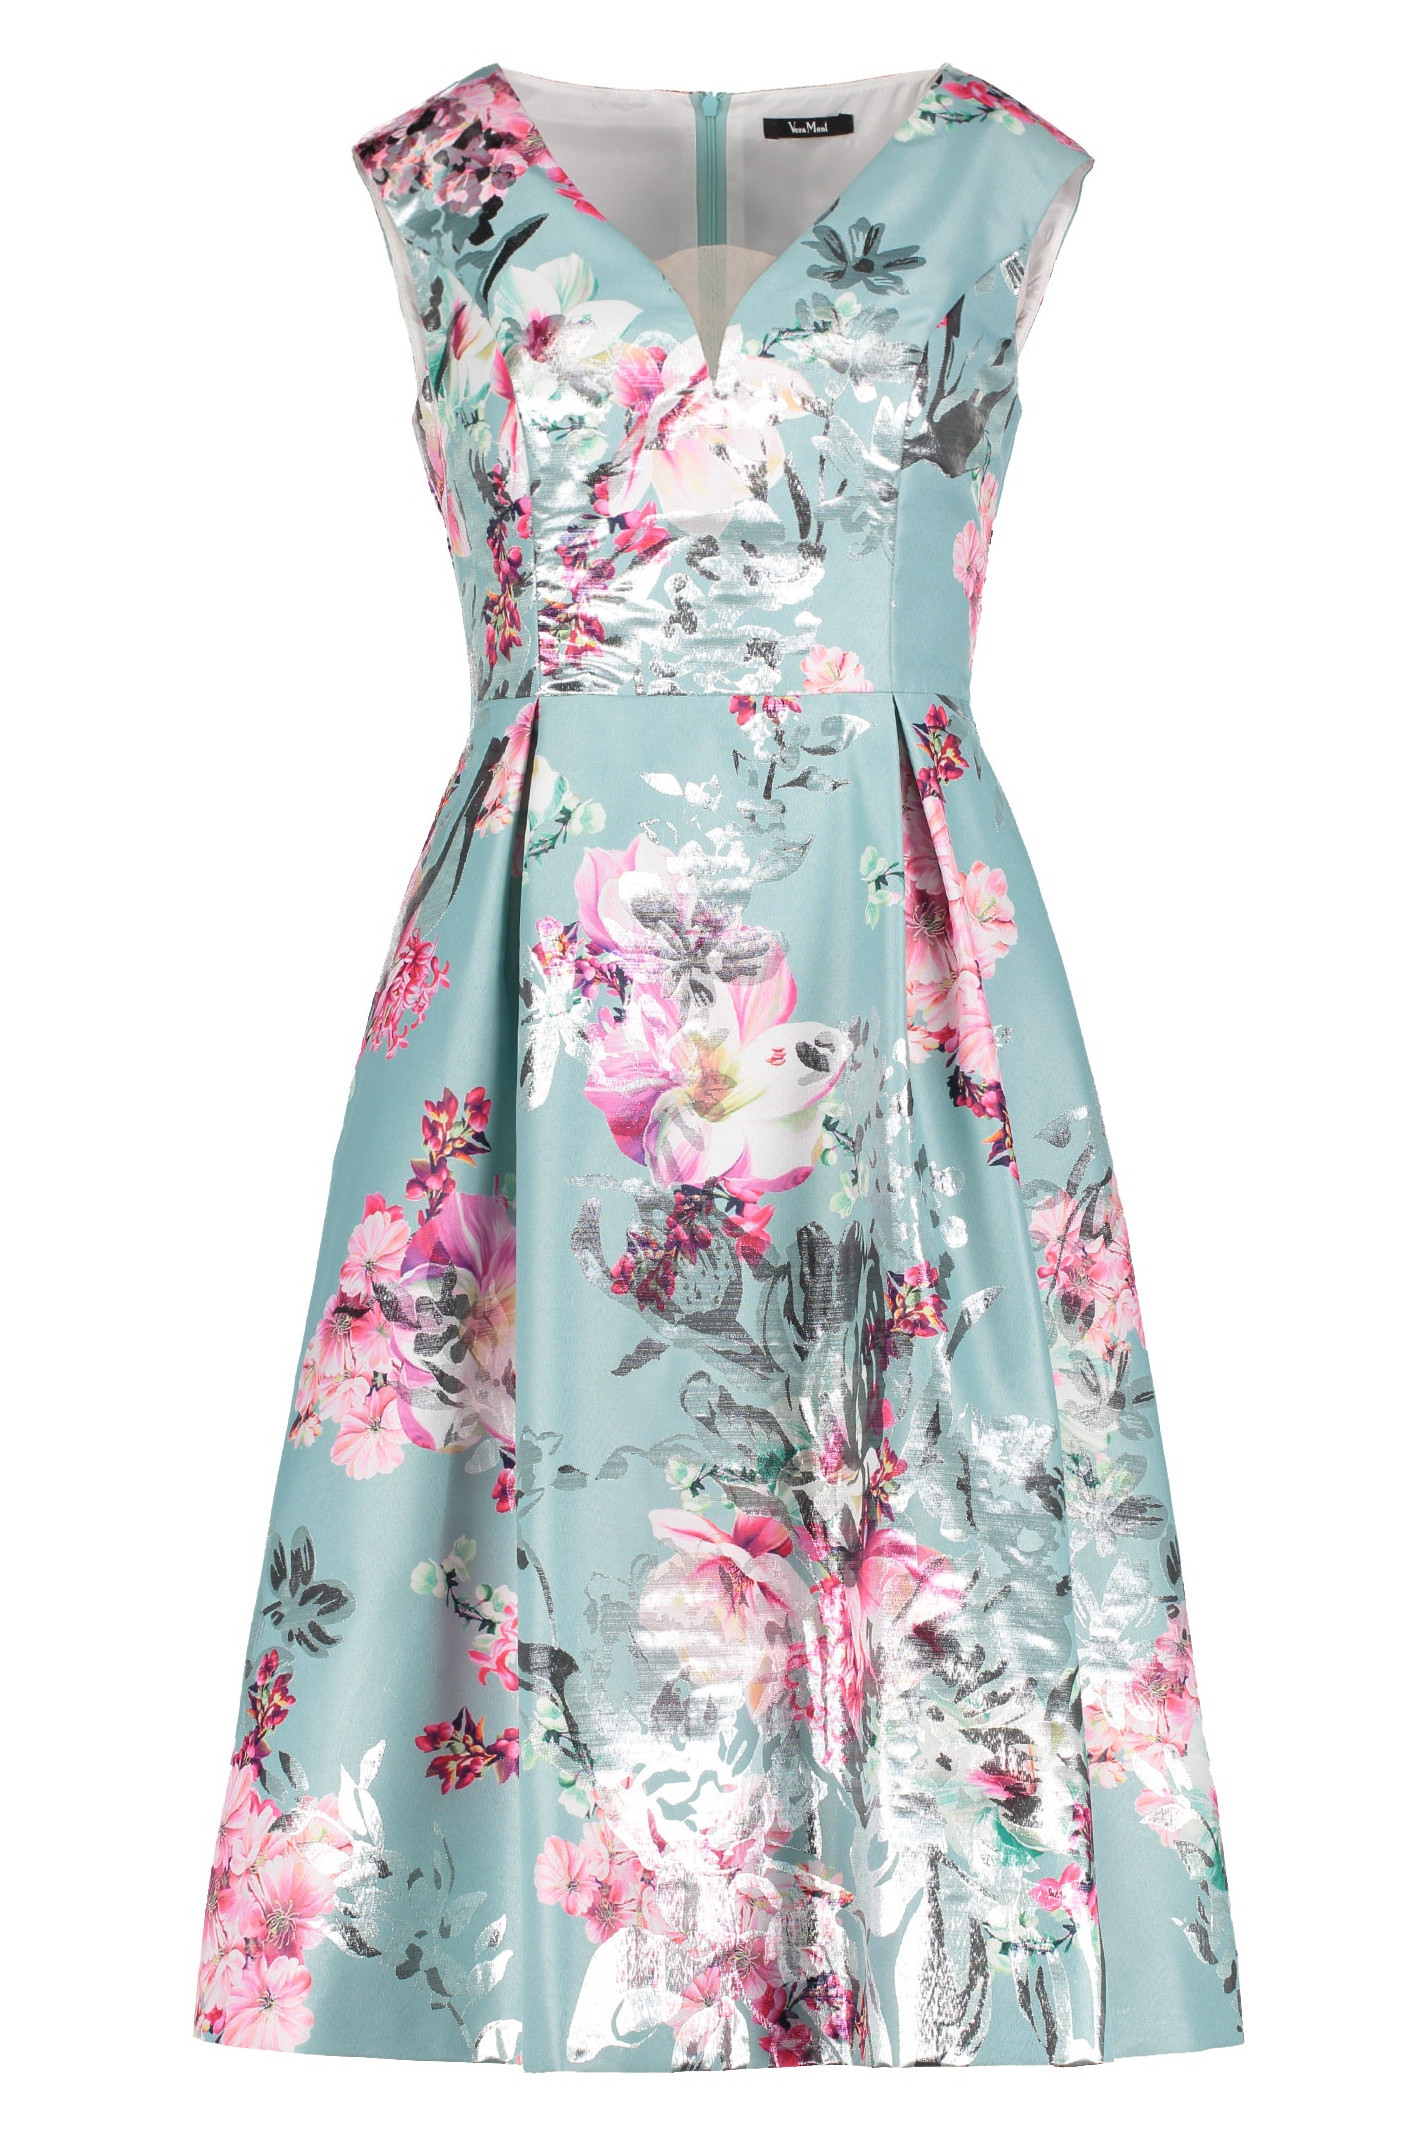 Formal Perfekt Kleid Mit Blumen Design15 Genial Kleid Mit Blumen Boutique